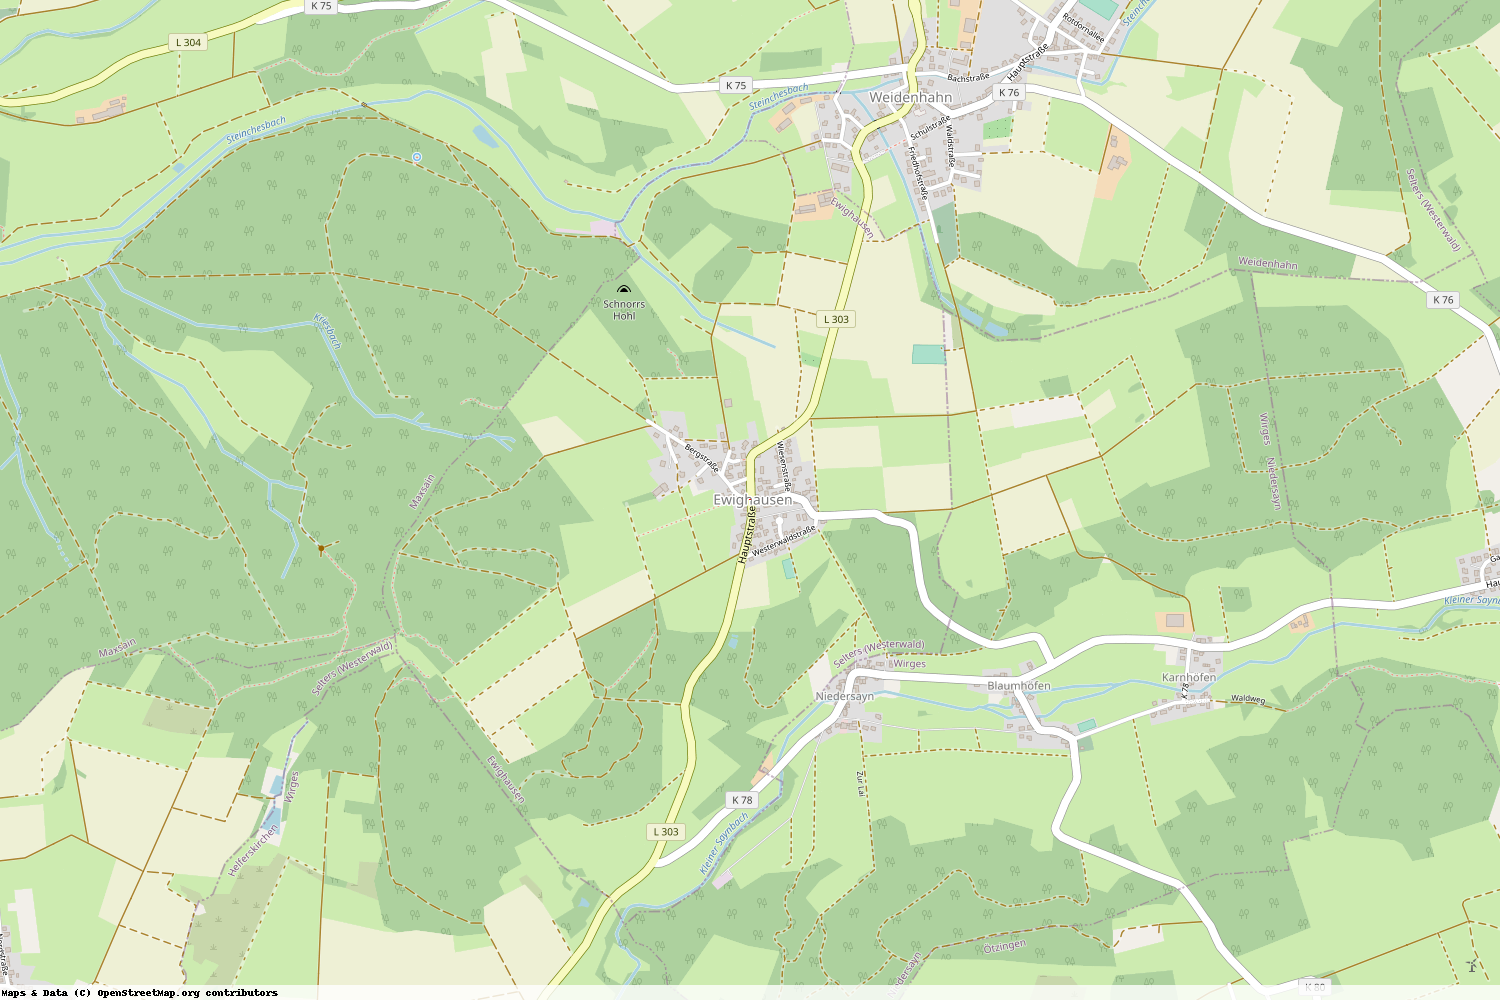 Ist gerade Stromausfall in Rheinland-Pfalz - Westerwaldkreis - Ewighausen?